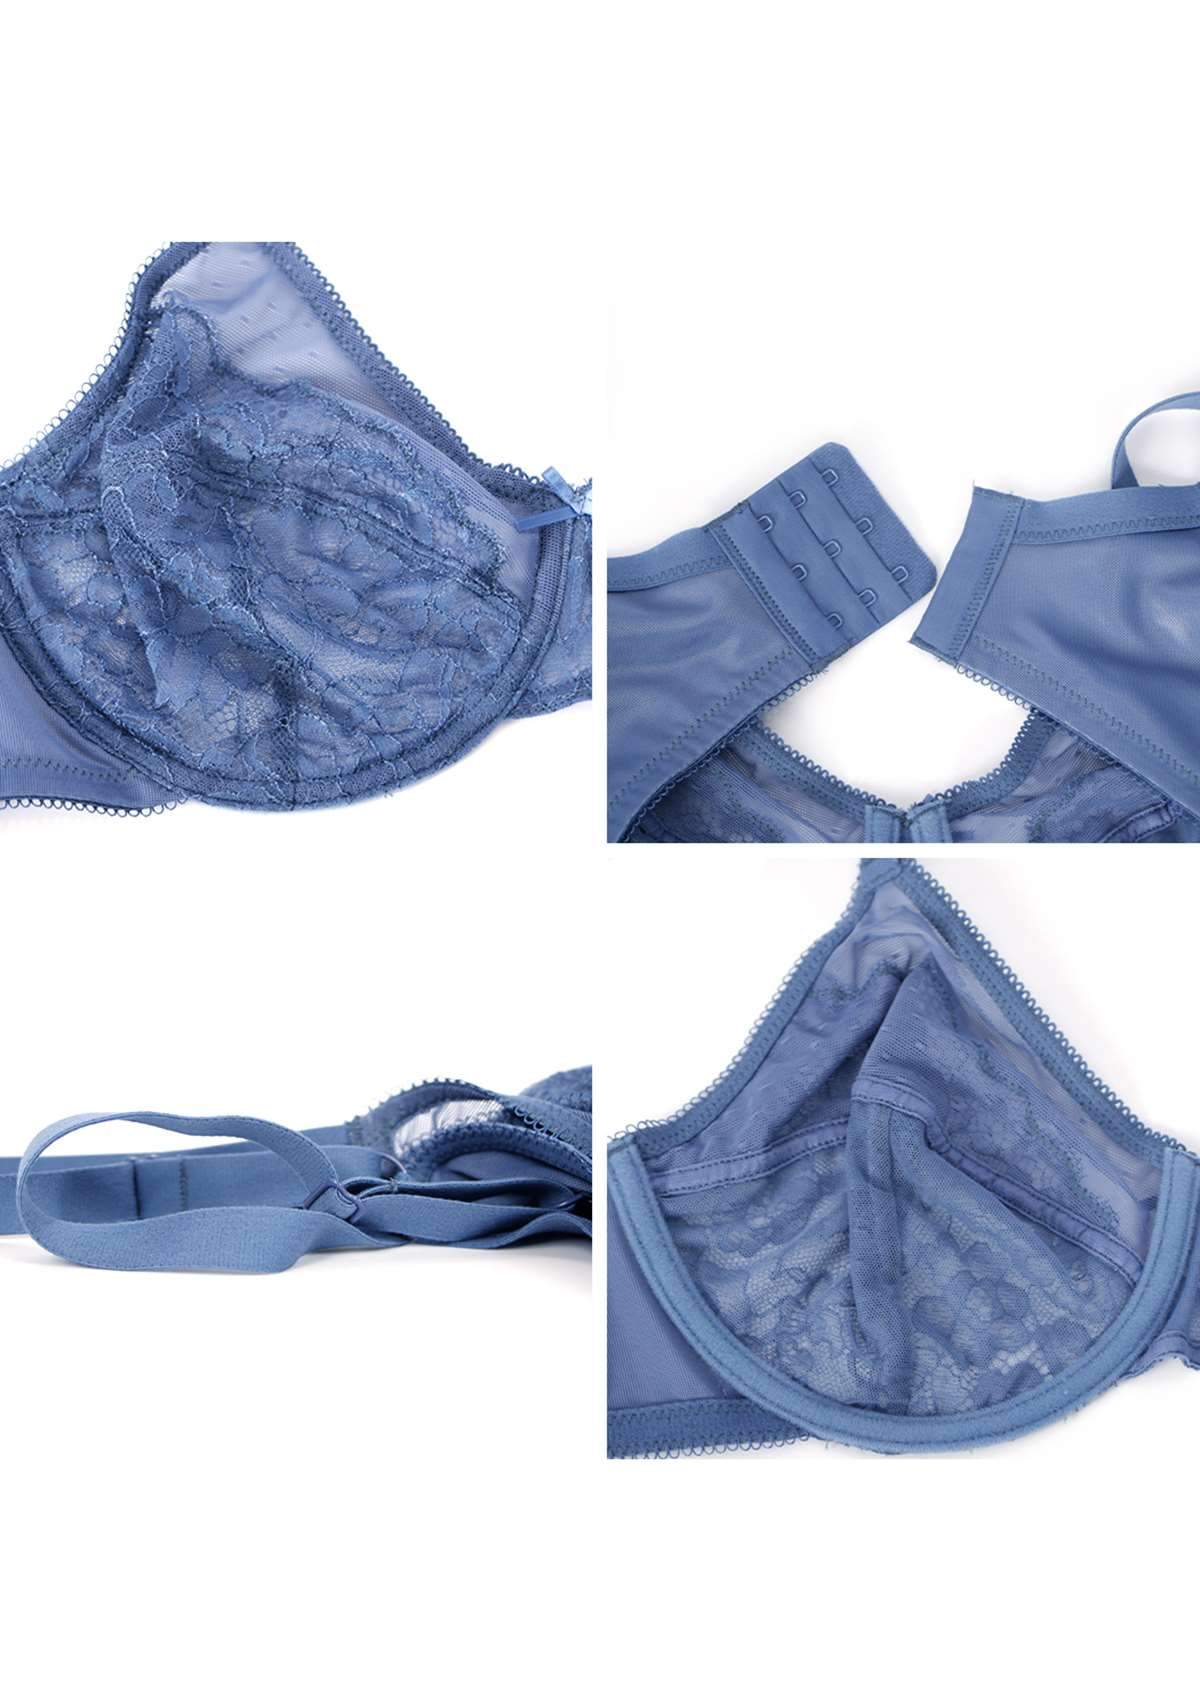 HSIA Enchante Underwire Lace Mesh Bra: Unlined Bra For Plus Size - Denim Blue / 34 / C